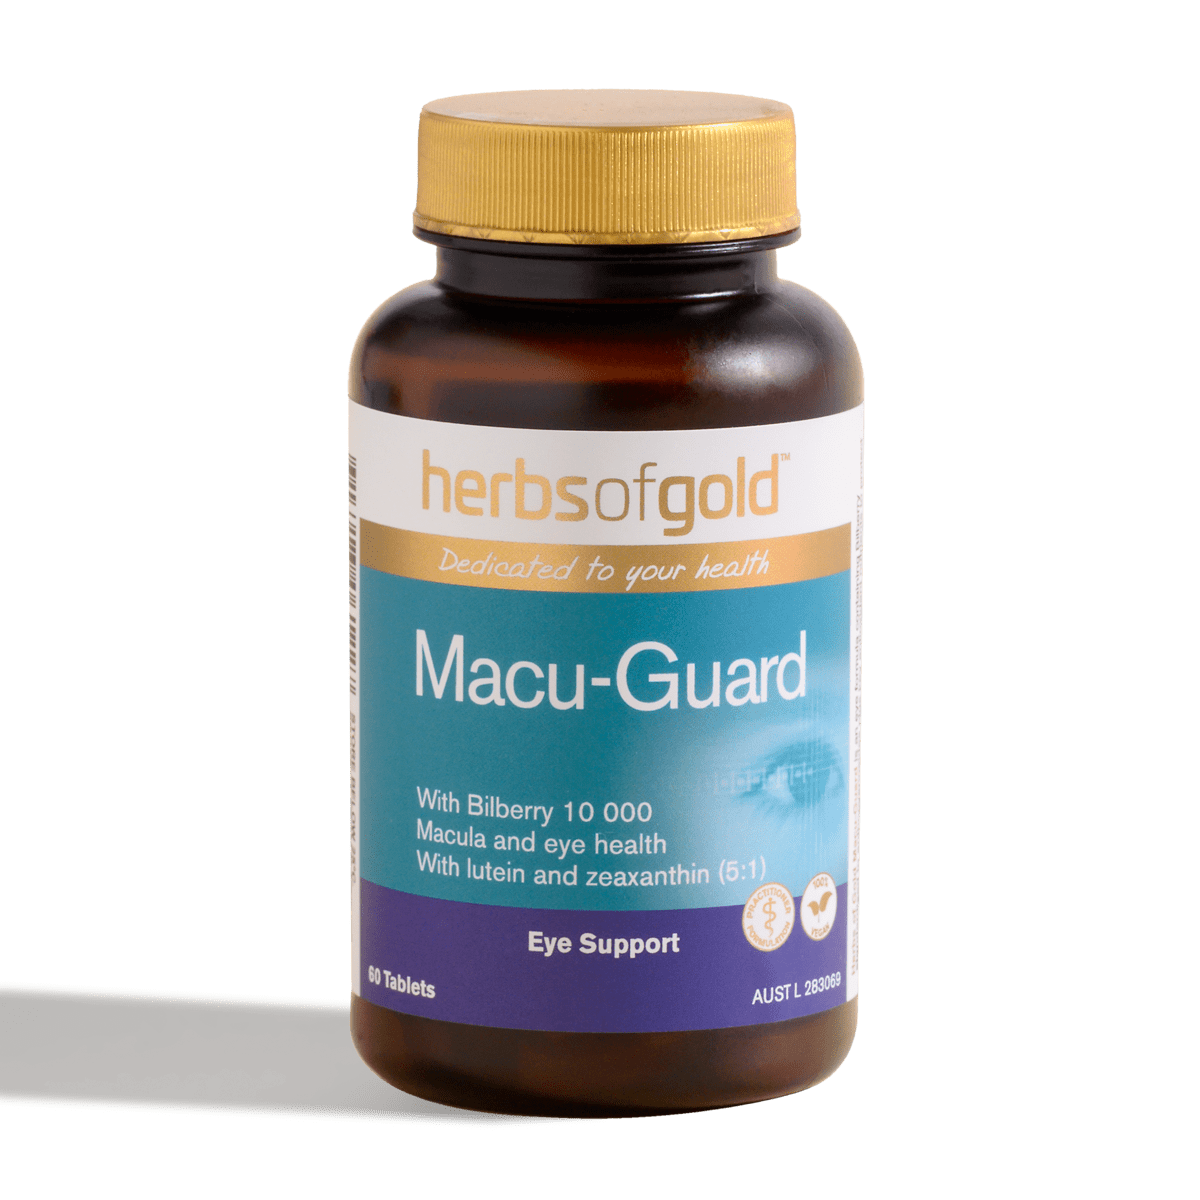 Macu-Guard